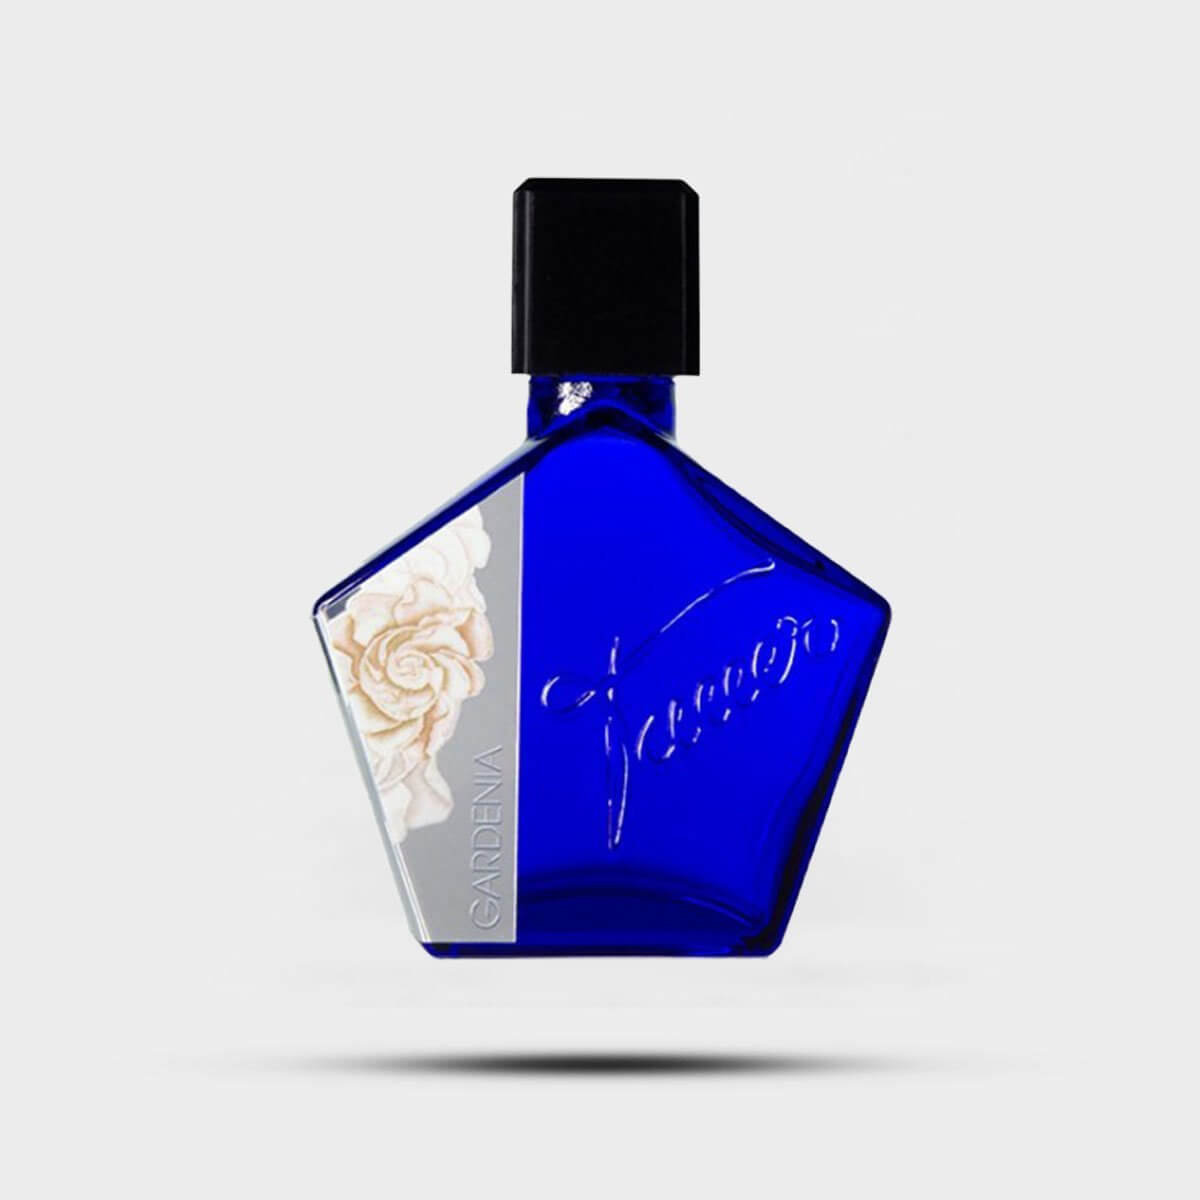 Gardenia Sotto La Luna Perfume by Andy tauer,Size 50ml, - La Maison Du  Parfum